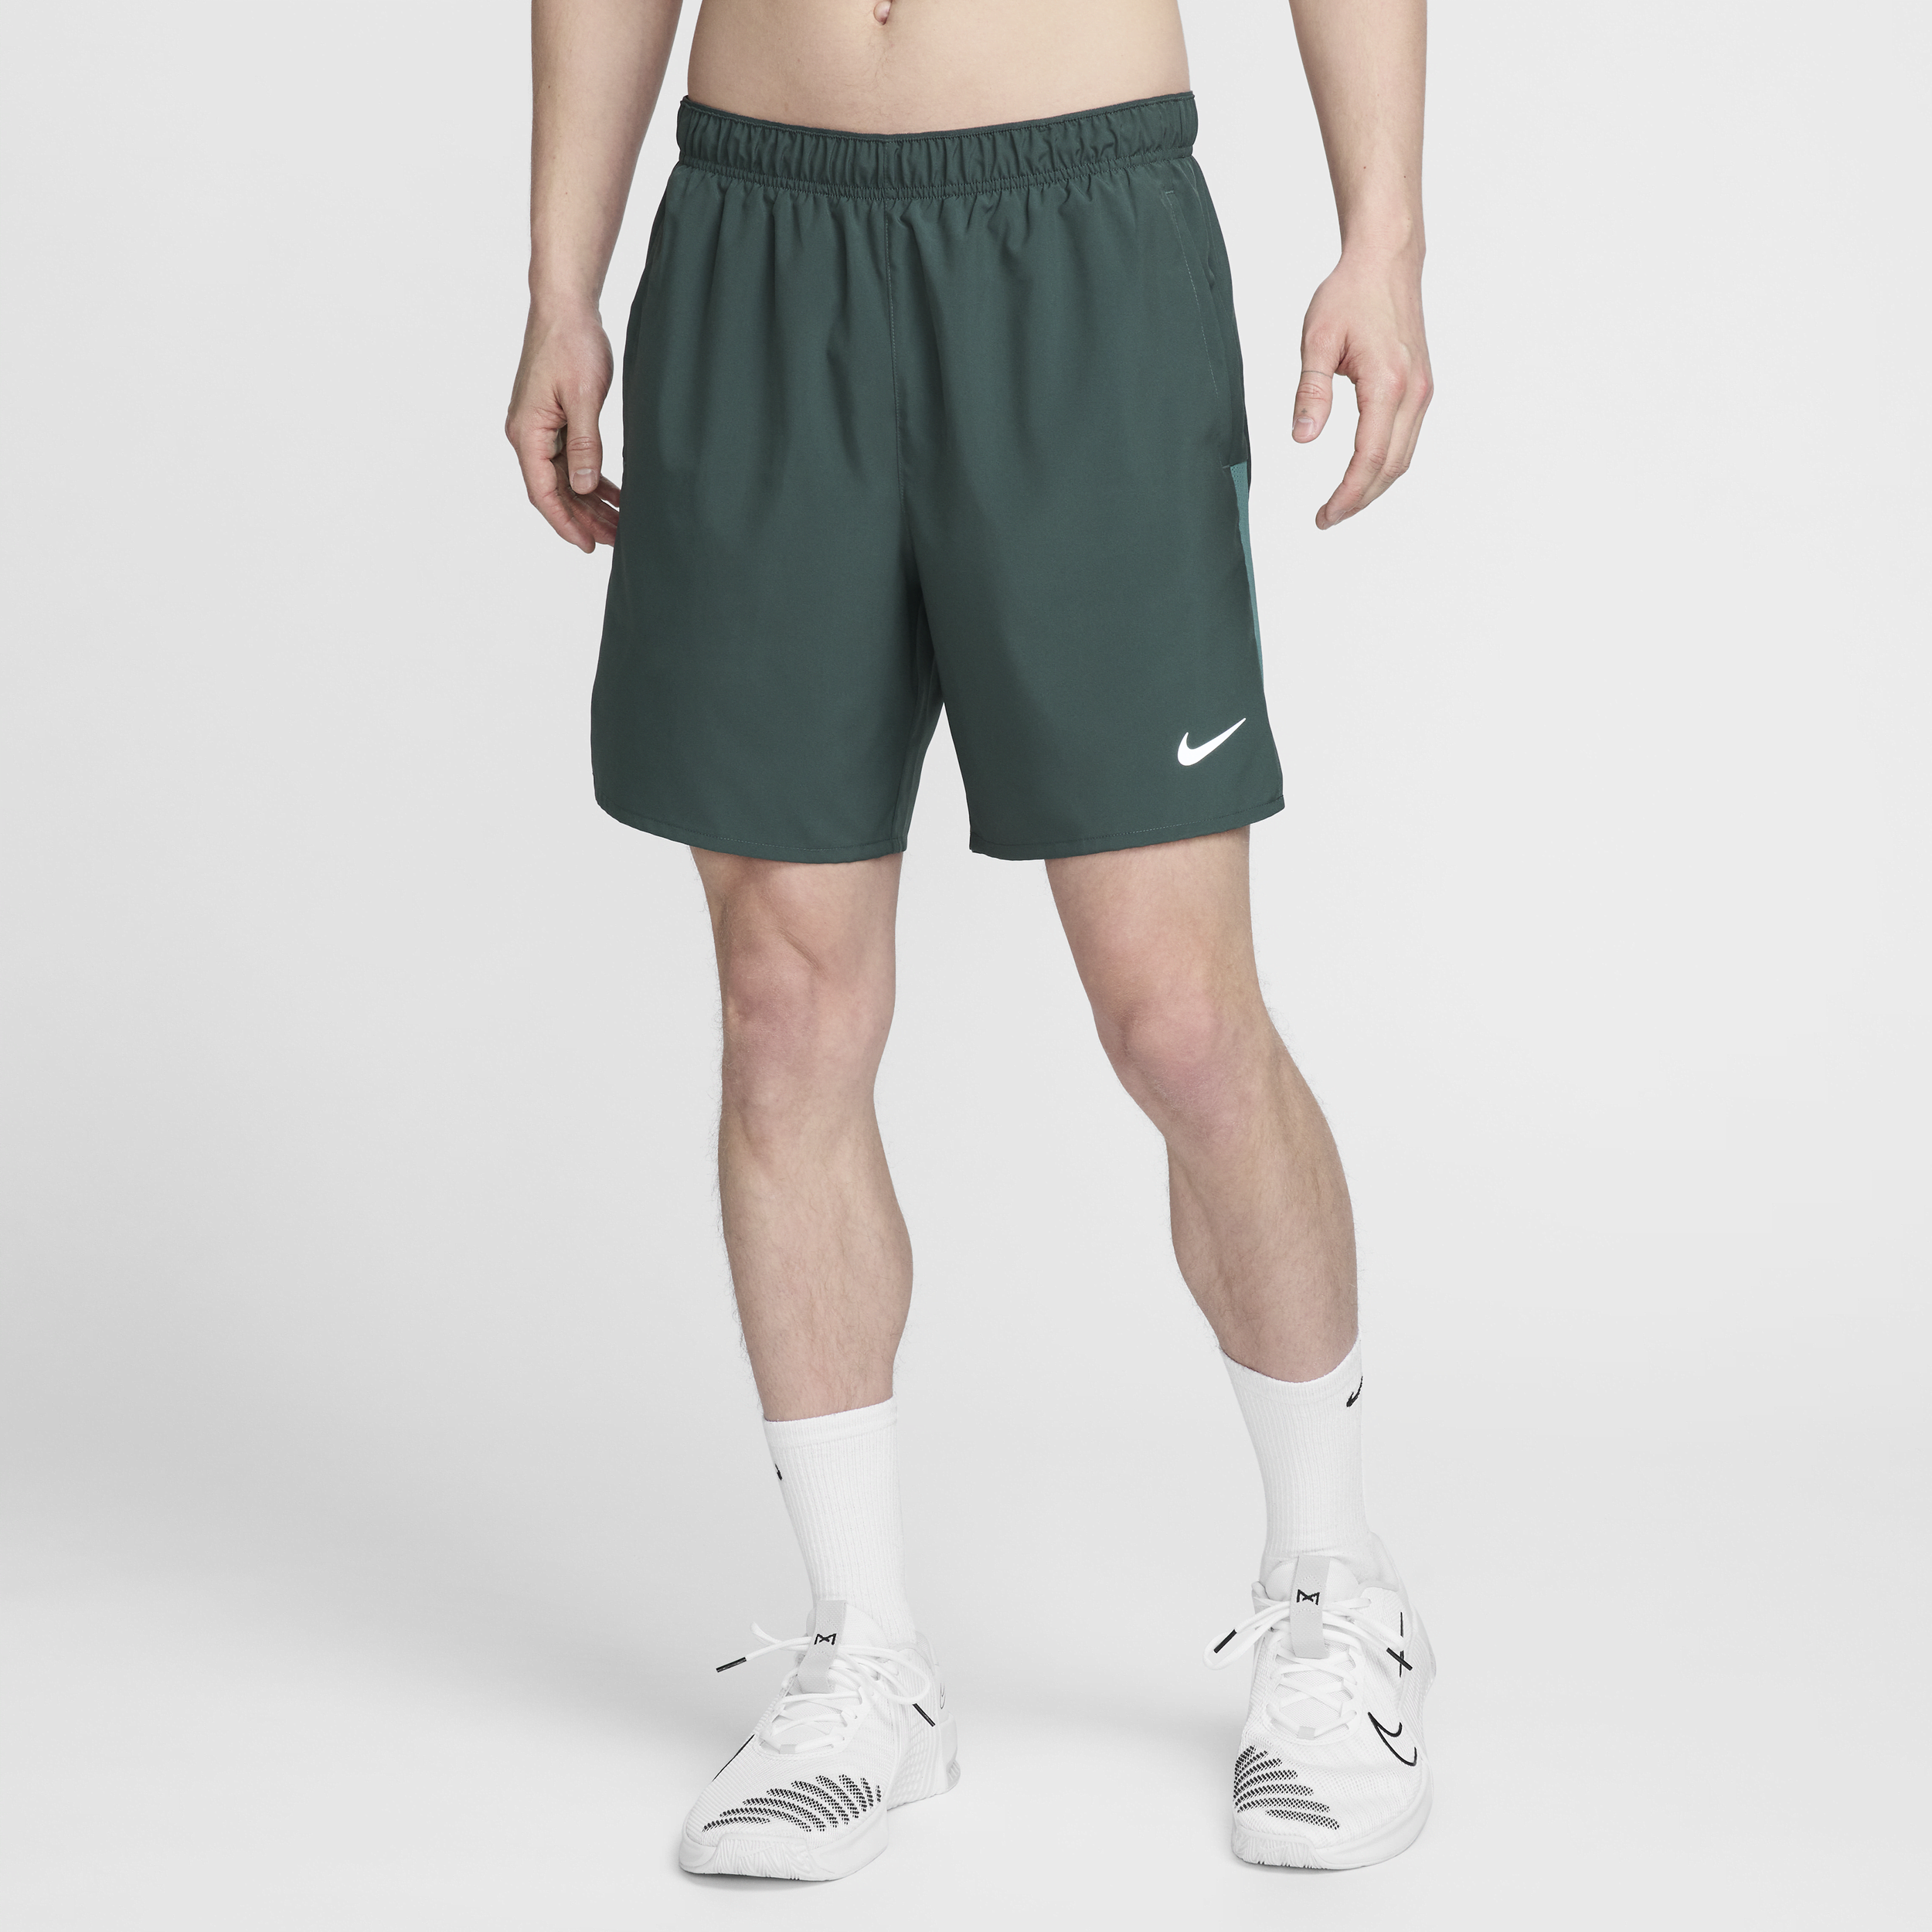 Nike Challenger Dri-FIT 2-in-1 hardloopshorts voor heren (18 cm) - Groen